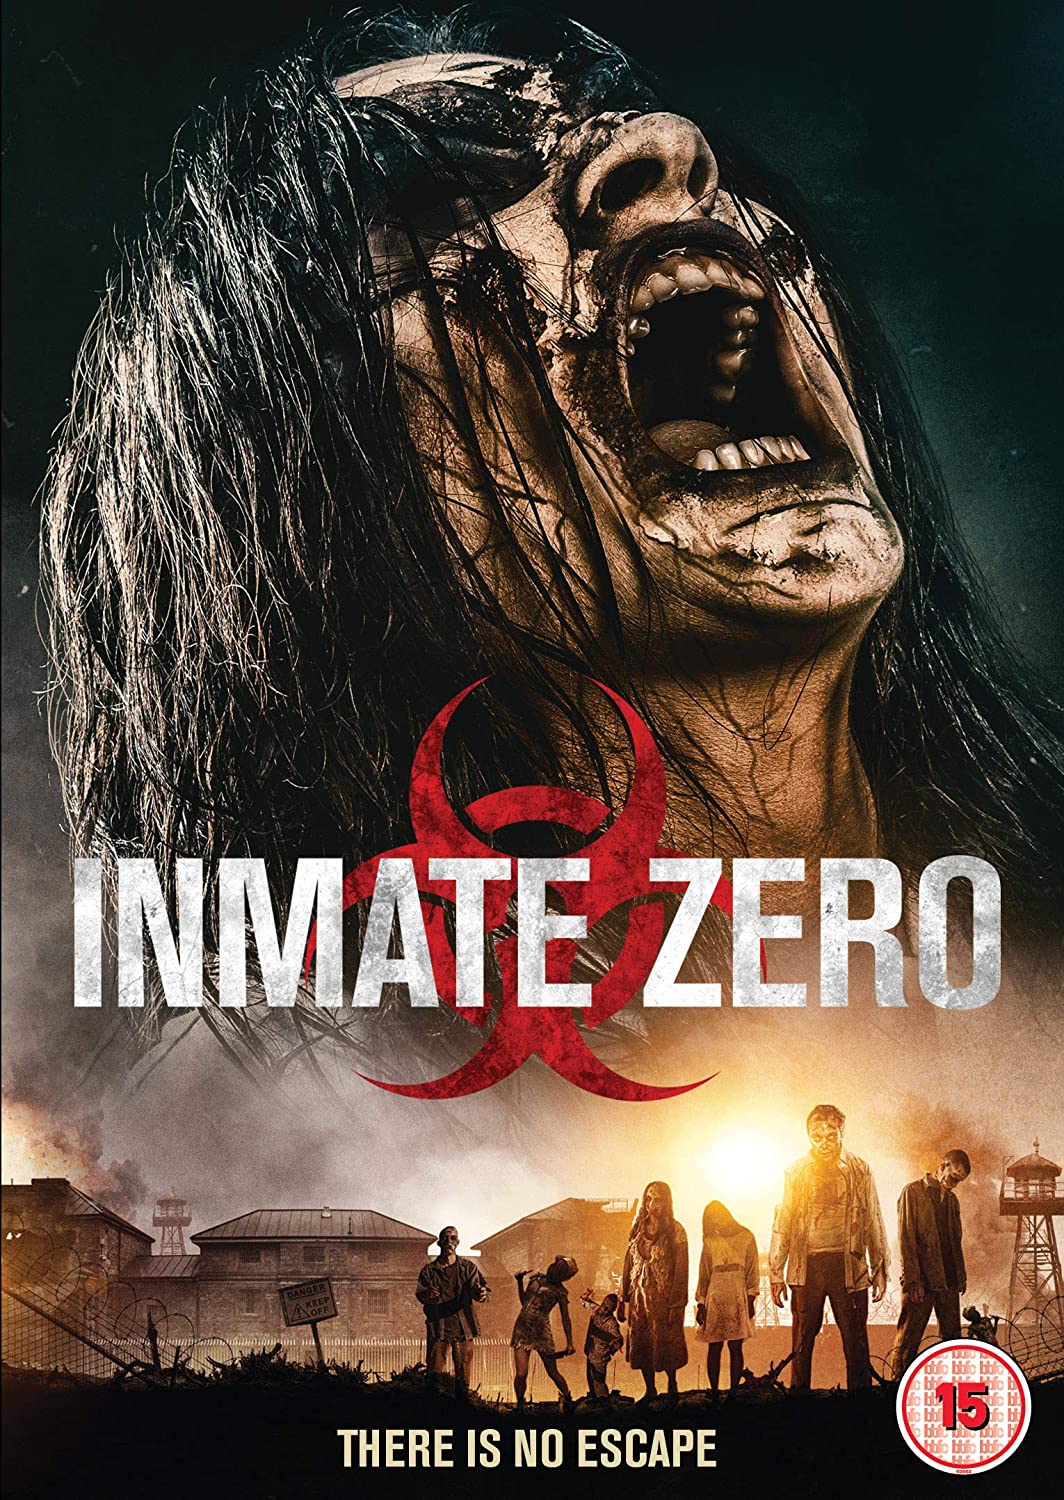 Inmate Zero 2019 2073 Poster.jpg